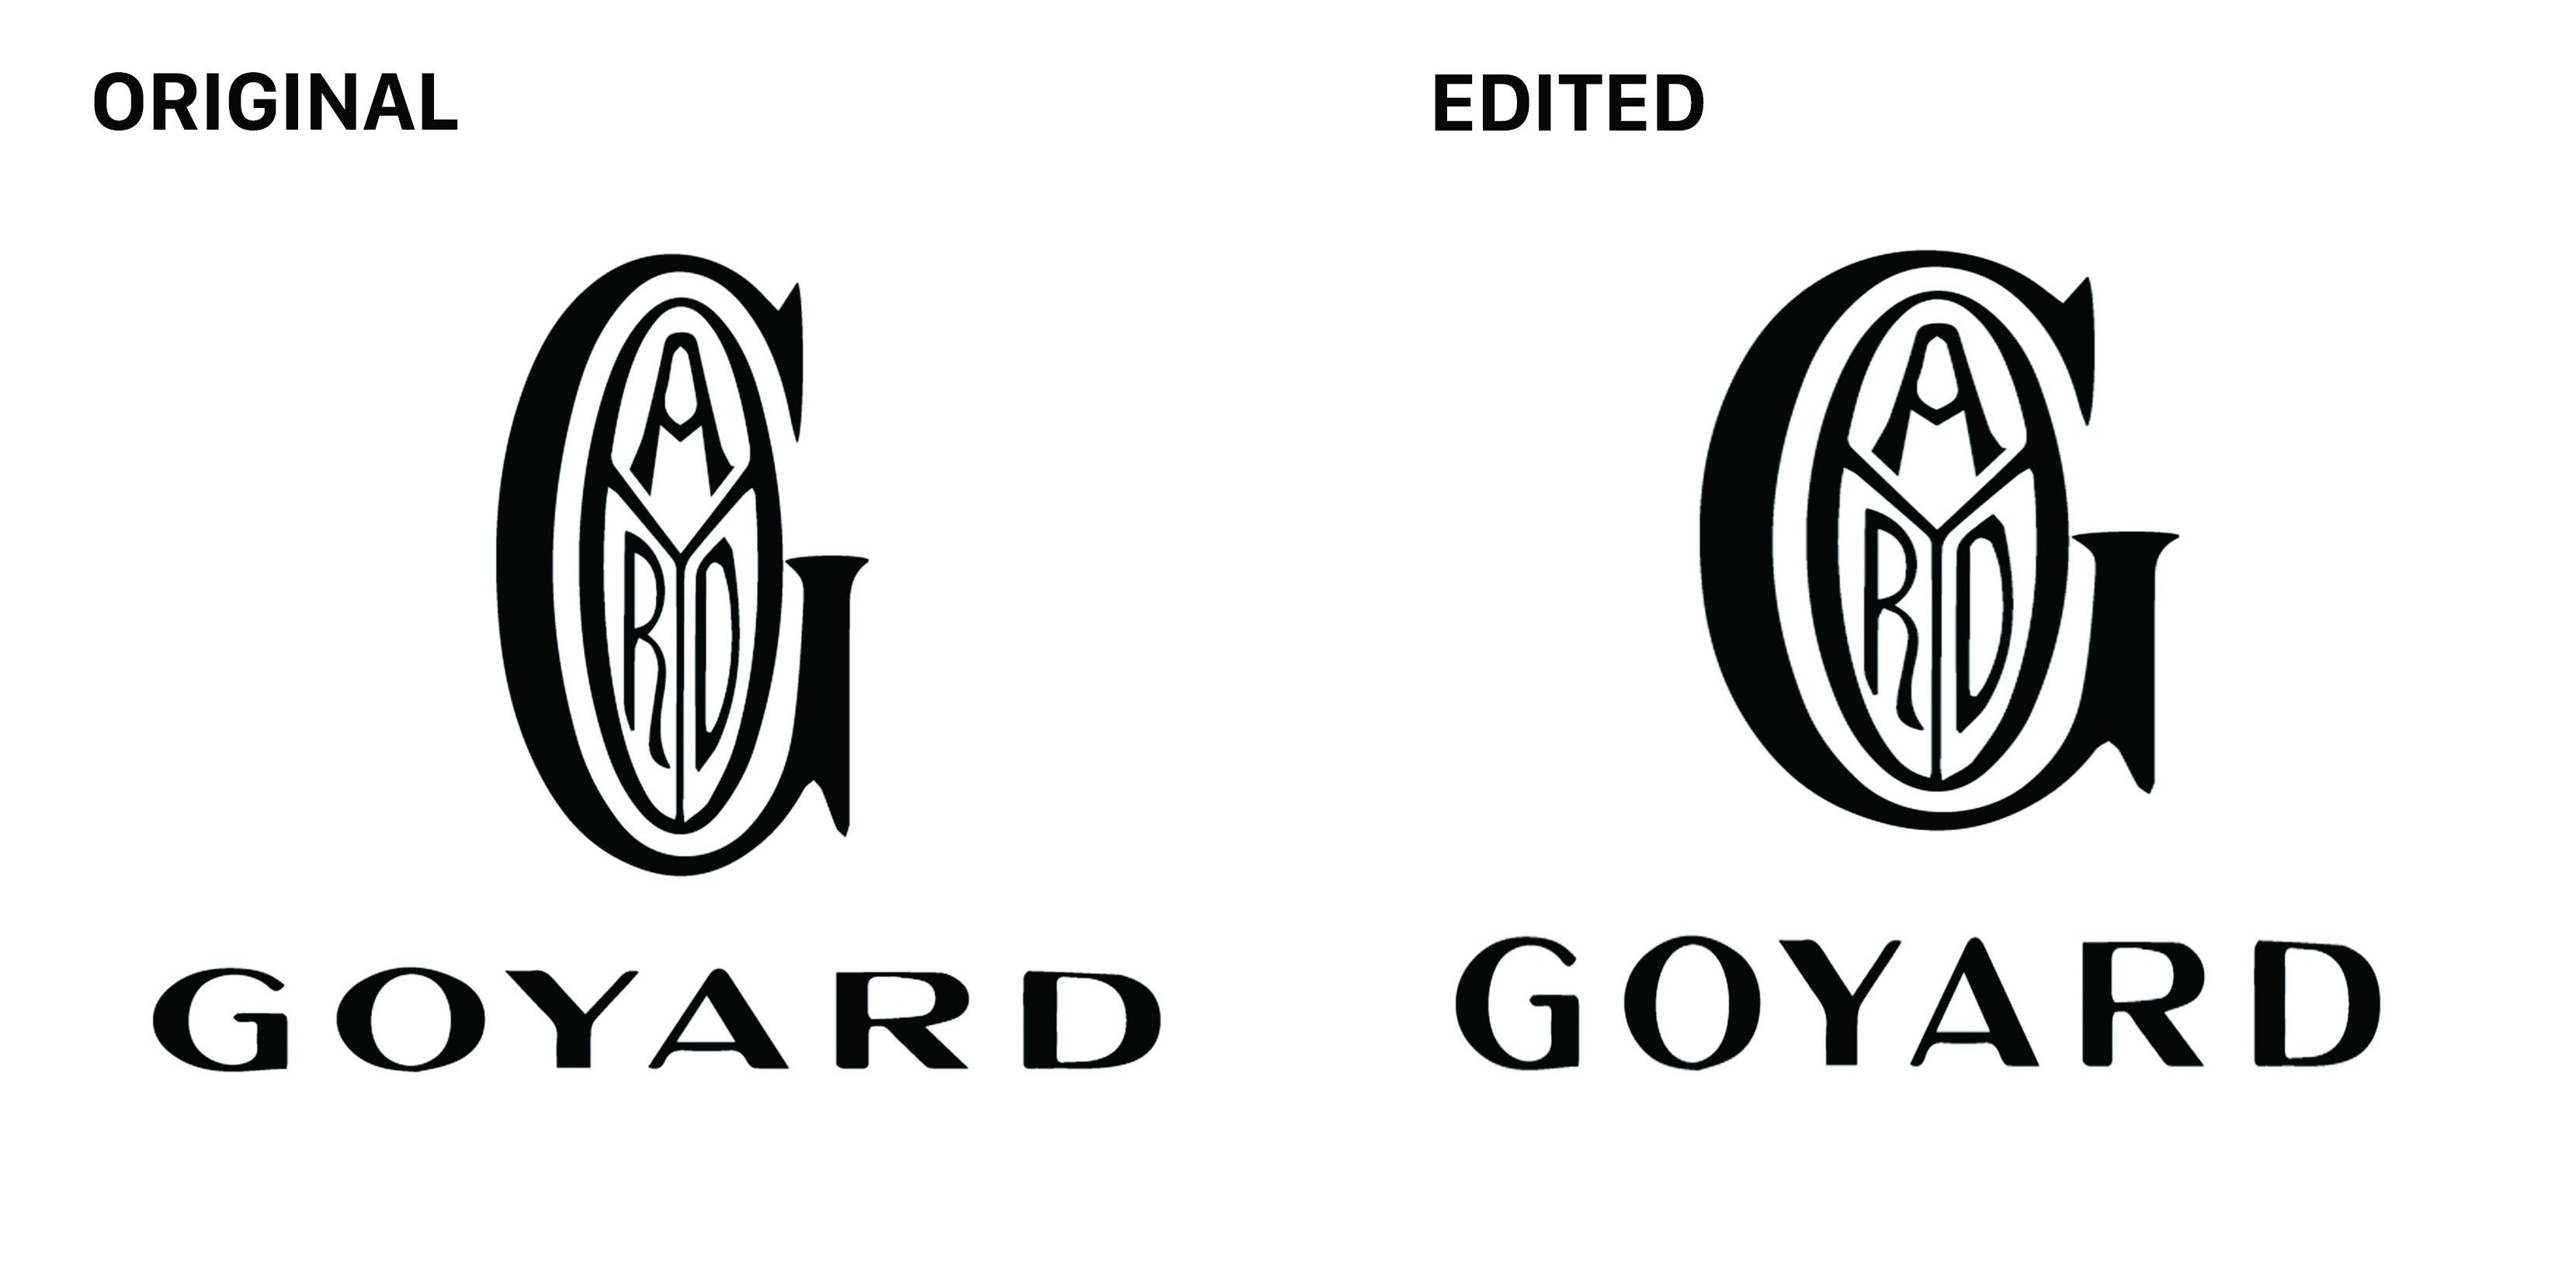 Goyard Logo - Fixed the stretched Goyard logo